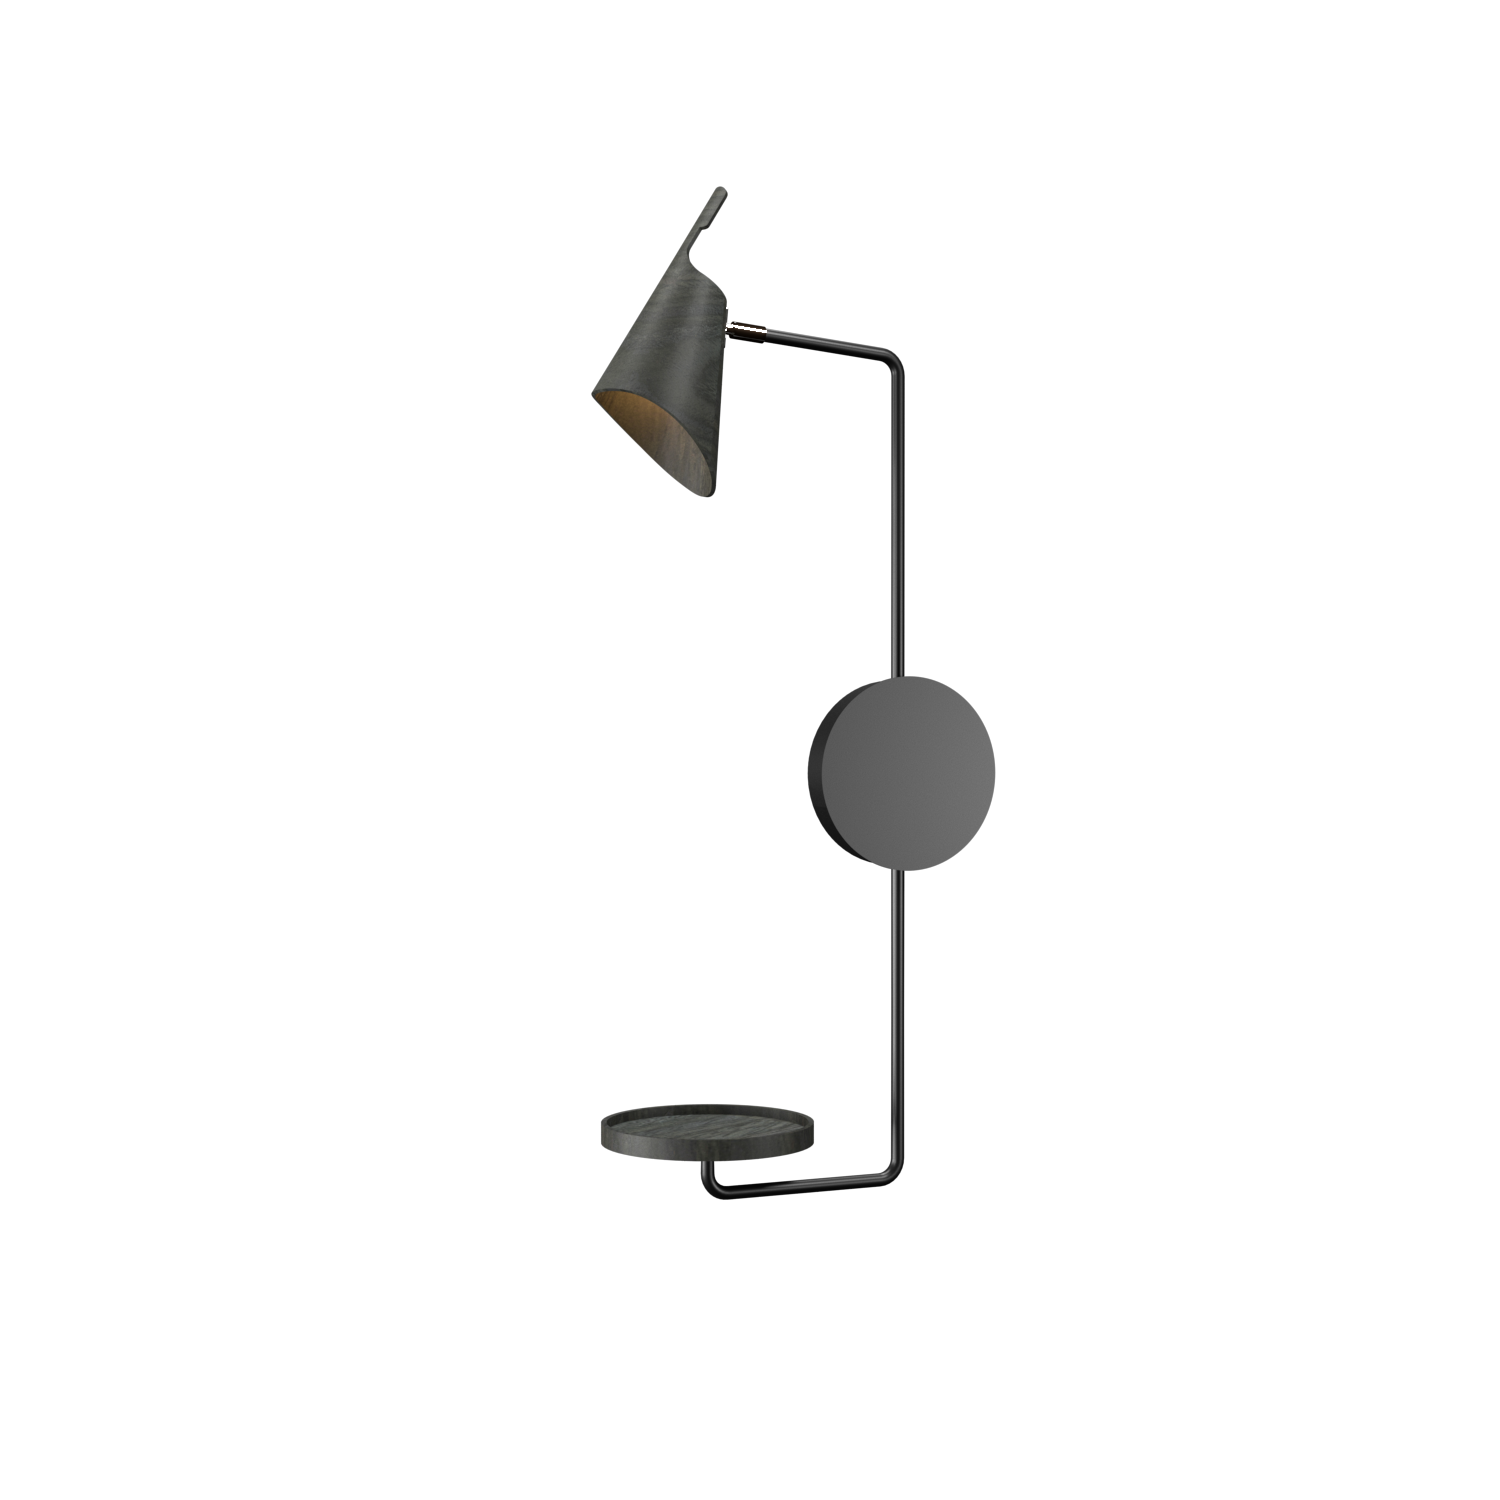 Wall Lamp Accord Balance 4151 - Balance Line Accord Lighting | 44. Charcoal